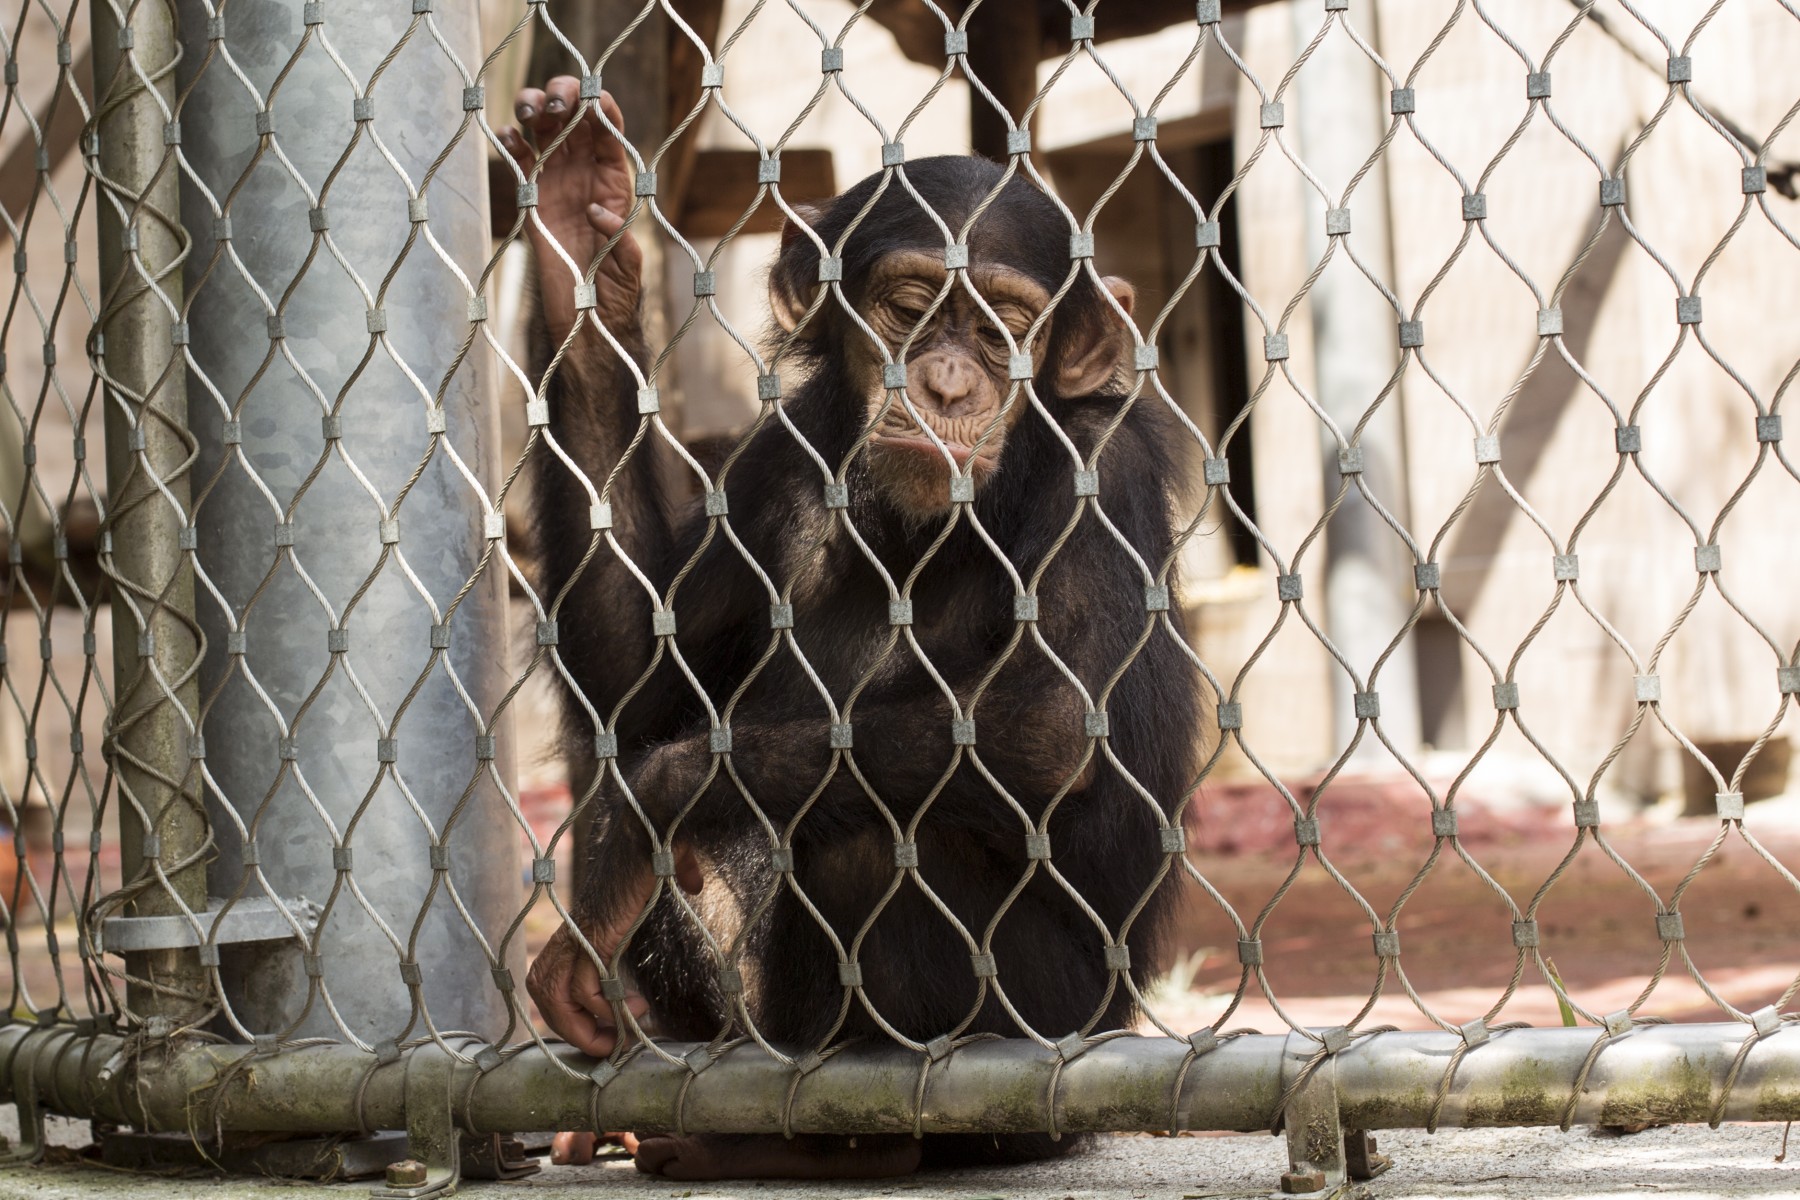 Sad chimp in a cage.